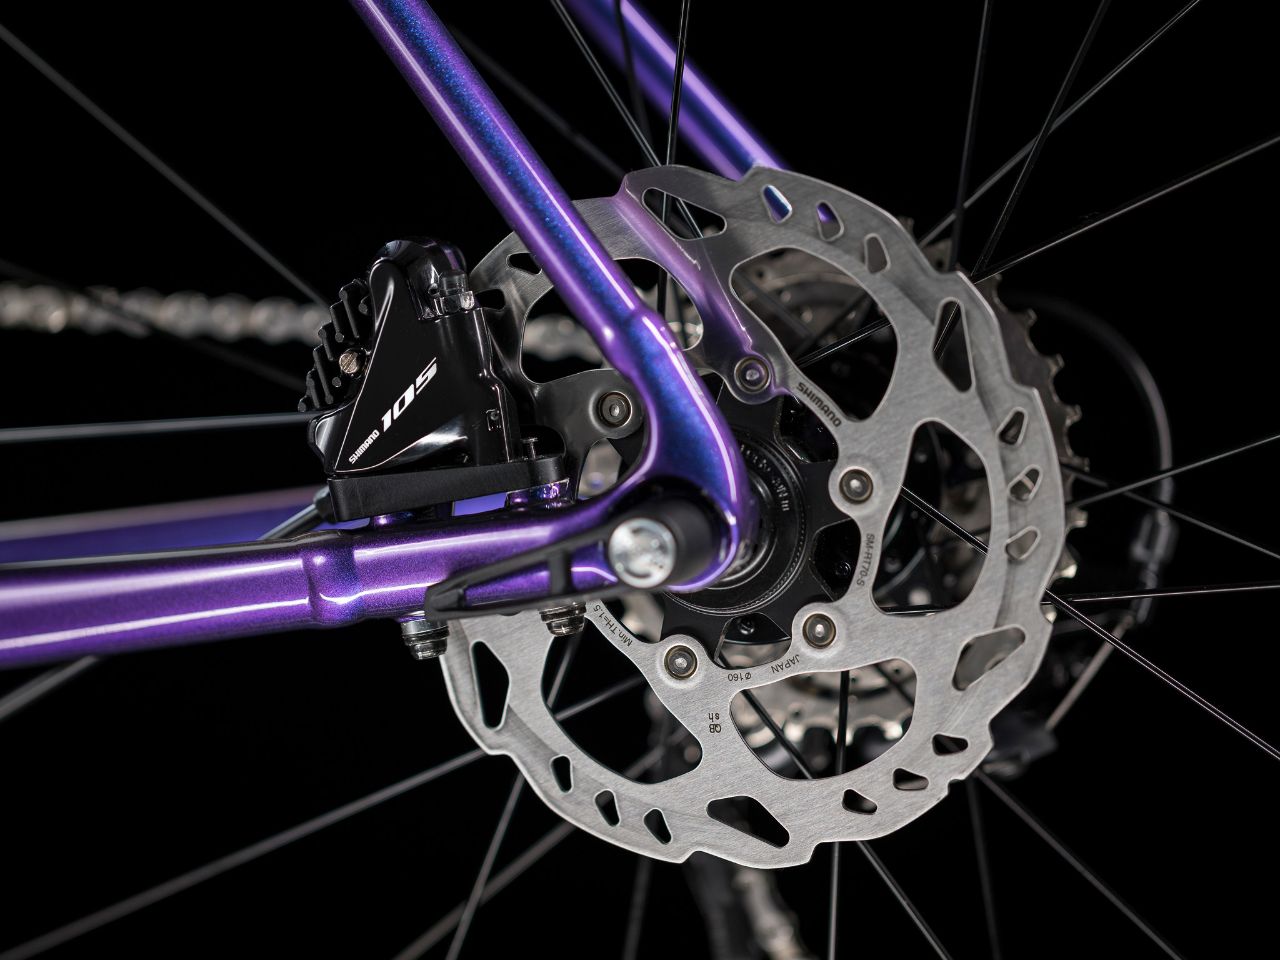 Trek's new Émonda ALR mimics higher end carbon bikes w/ attractive aluminum frame